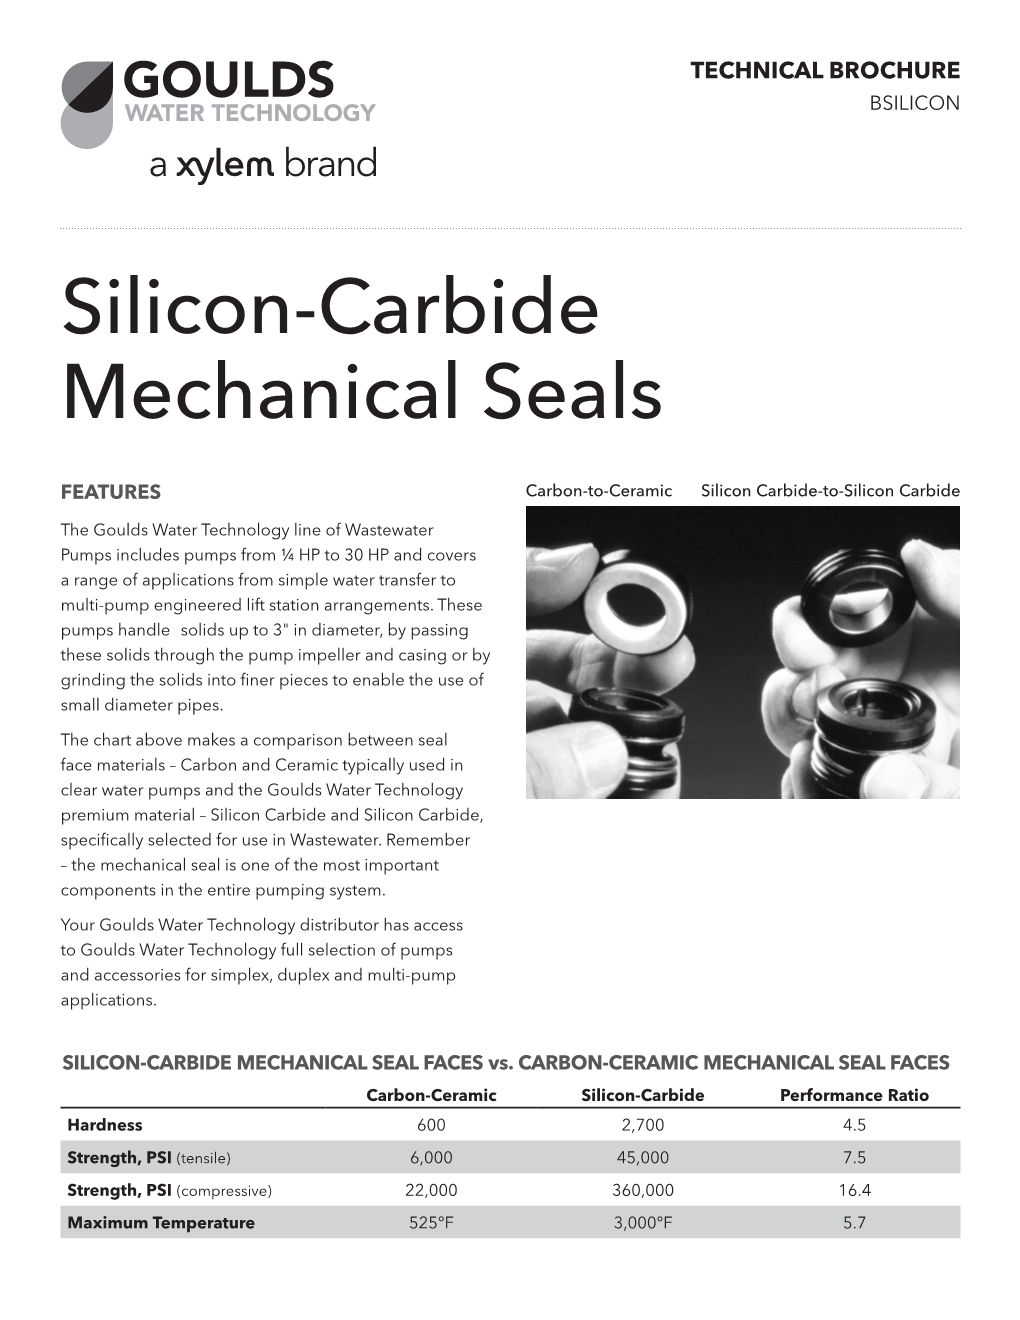 Silicon-Carbide Mechanical Seals